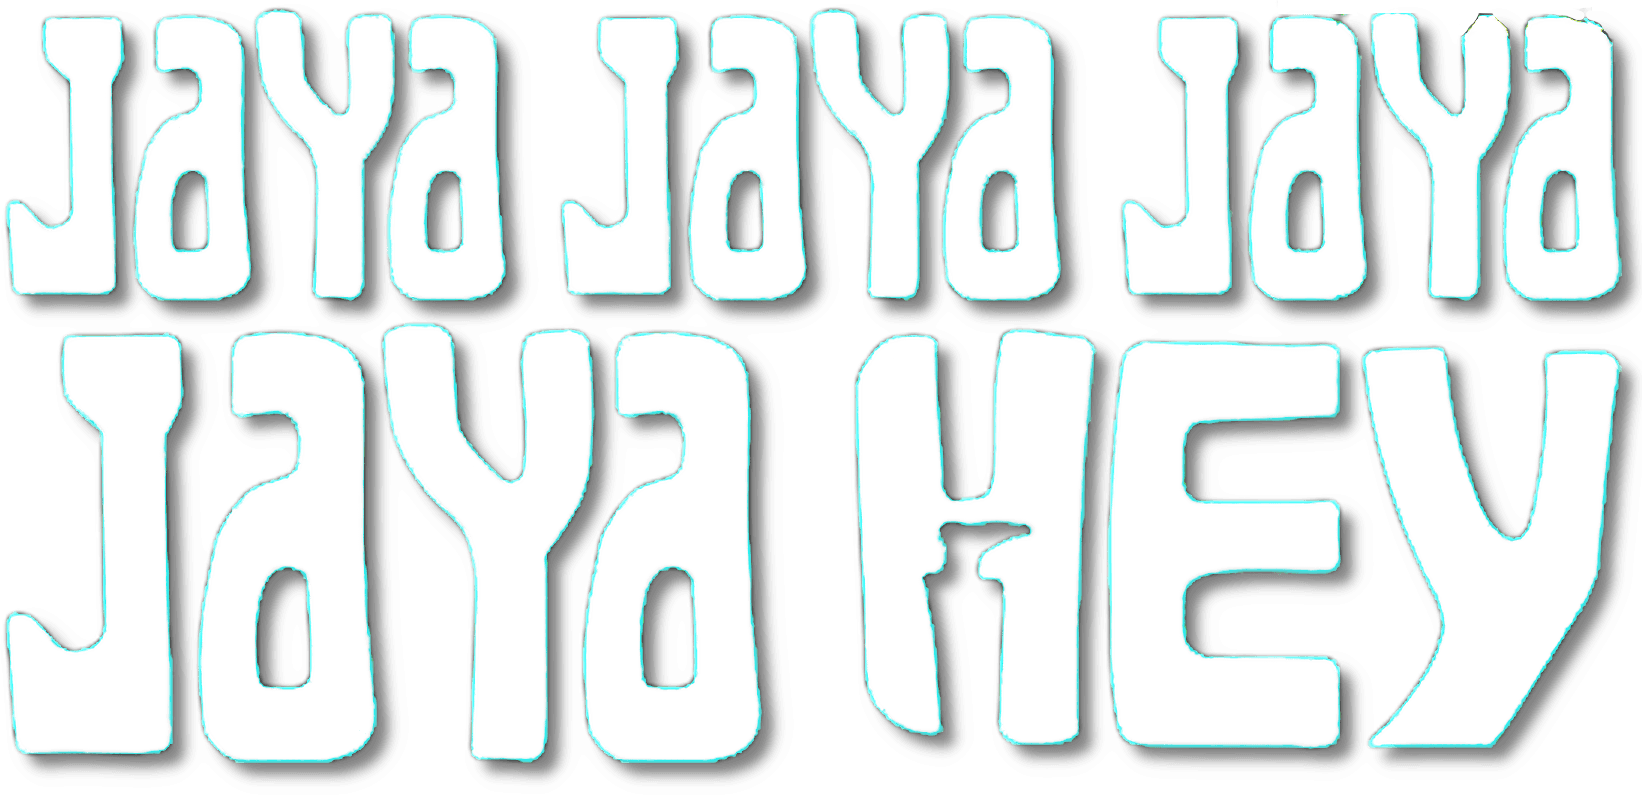 Jaya Jaya Jaya Jaya Hey logo